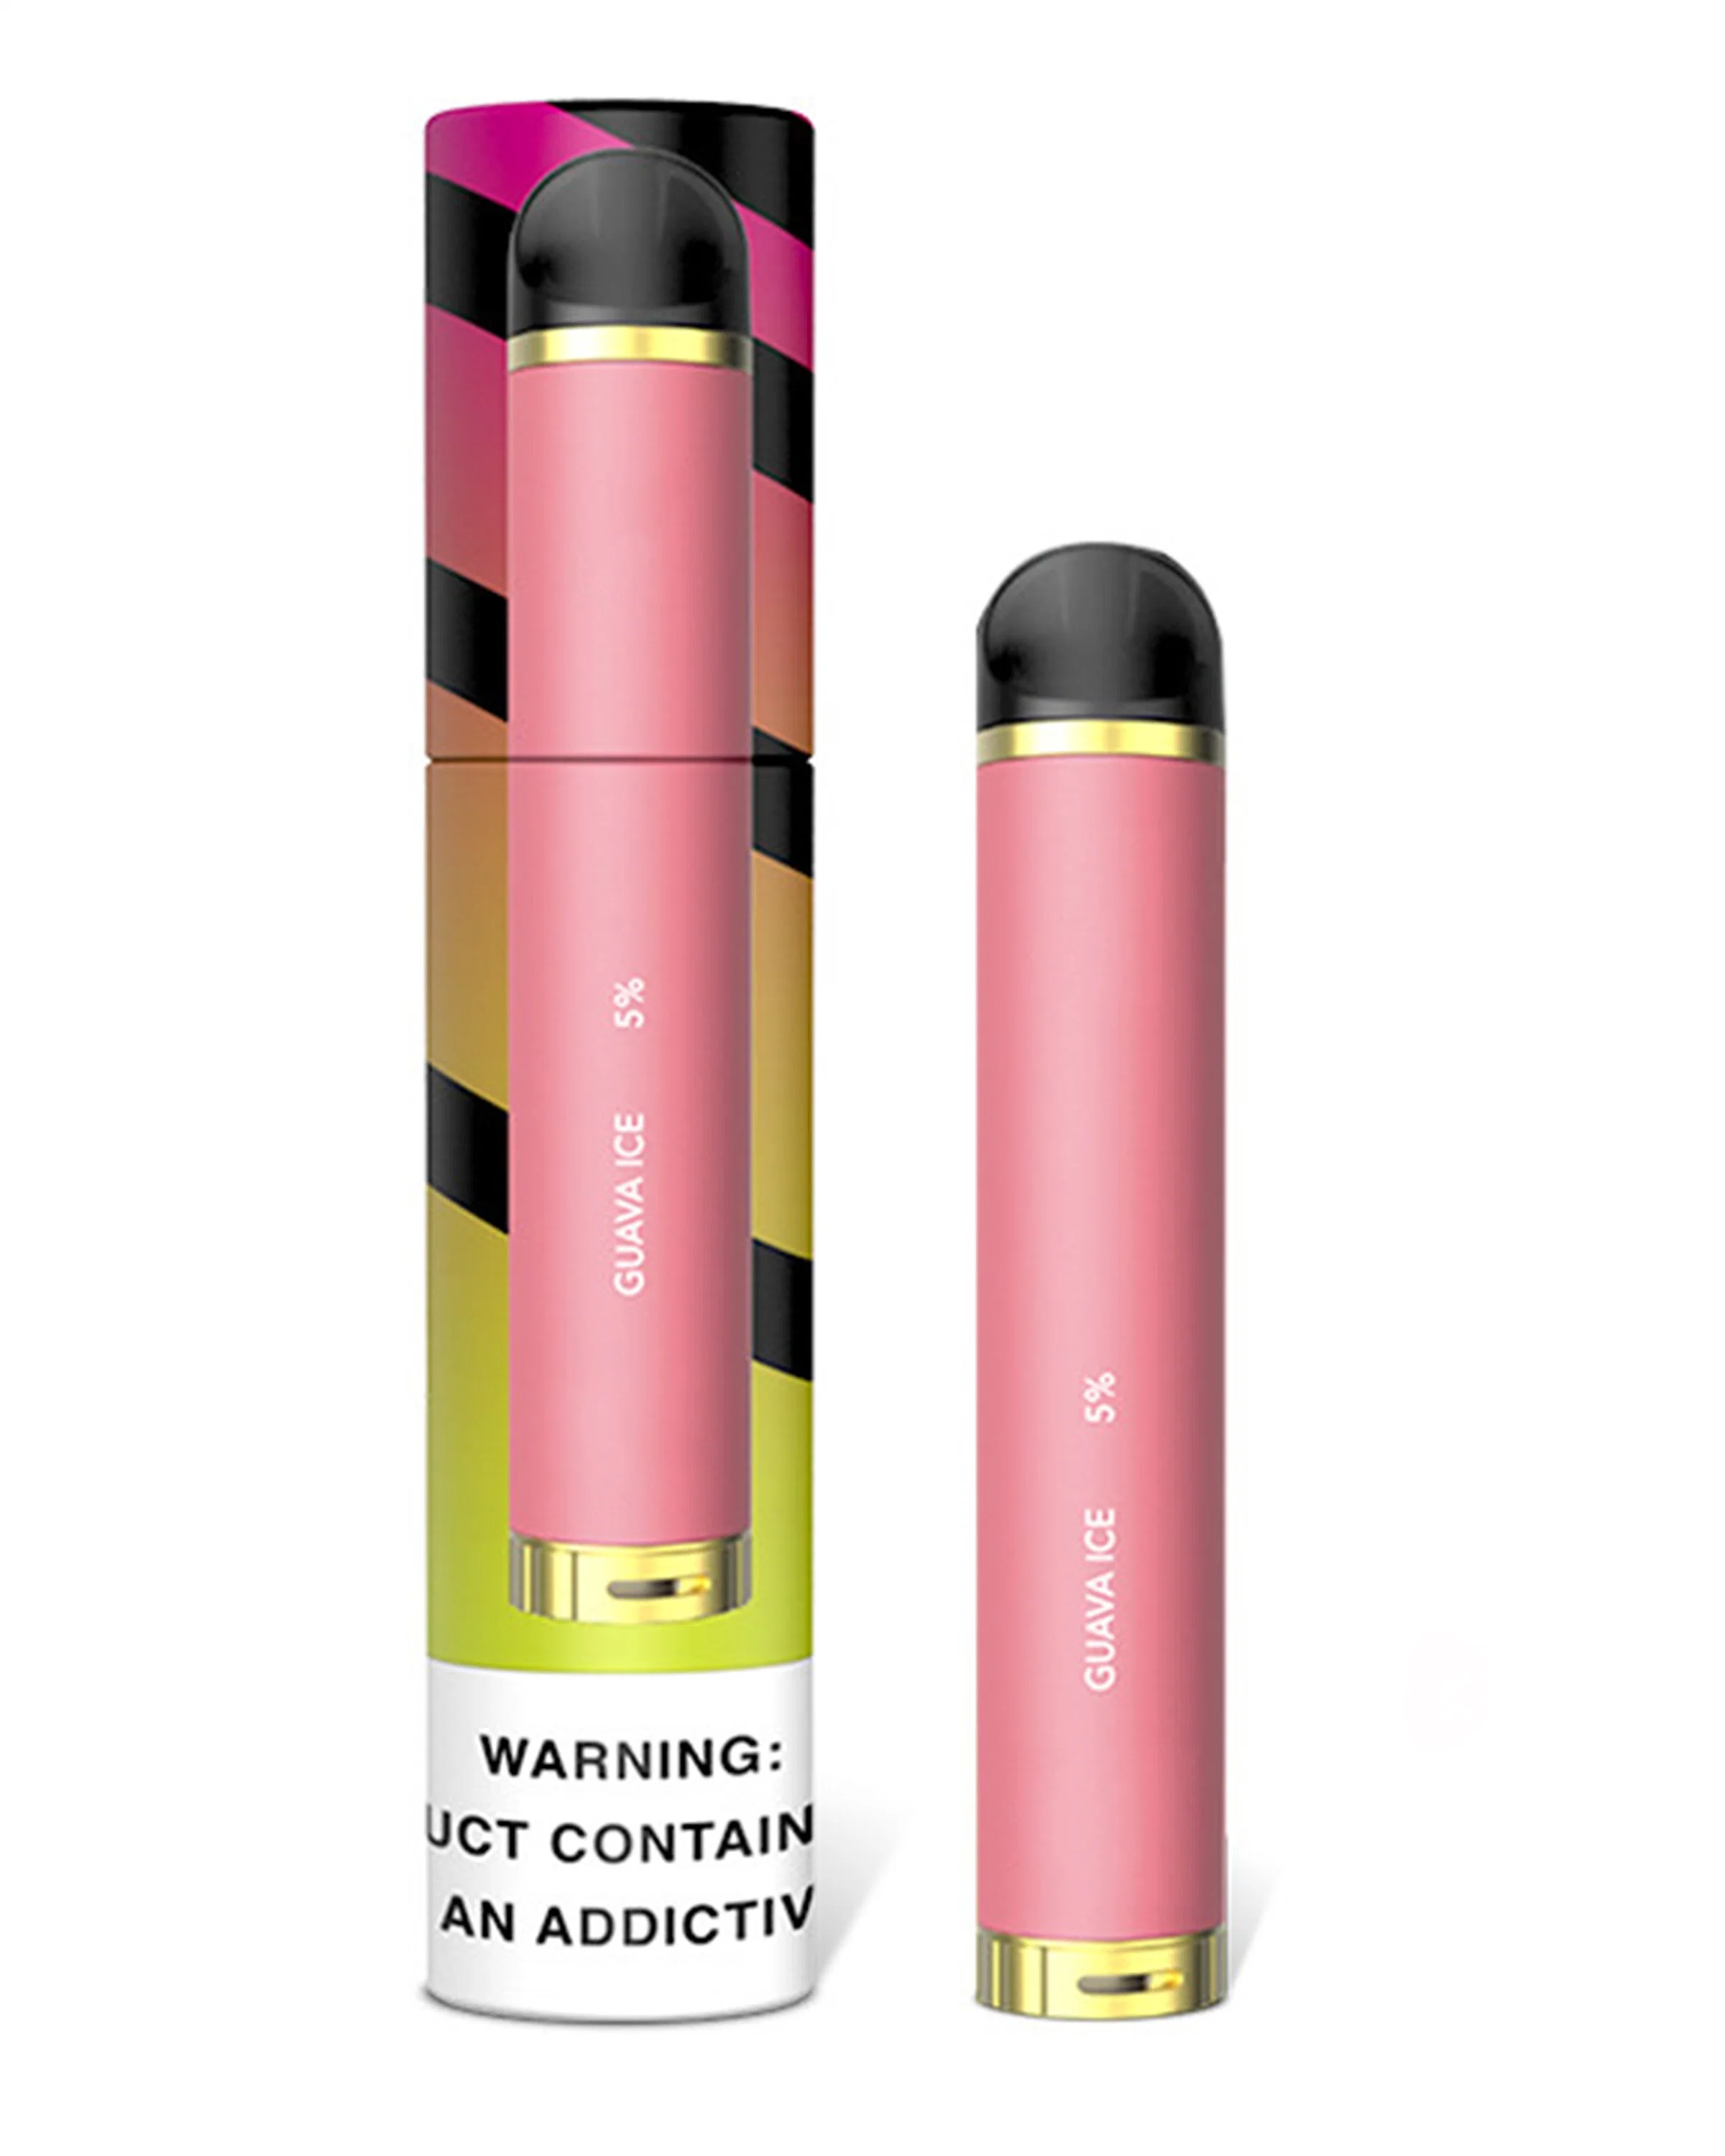 2020 Venta caliente Cigarrillo Electrónico Desechable 1000 inhalaciones E líquido pluma Vape más sabores nuevos envases bocanadas